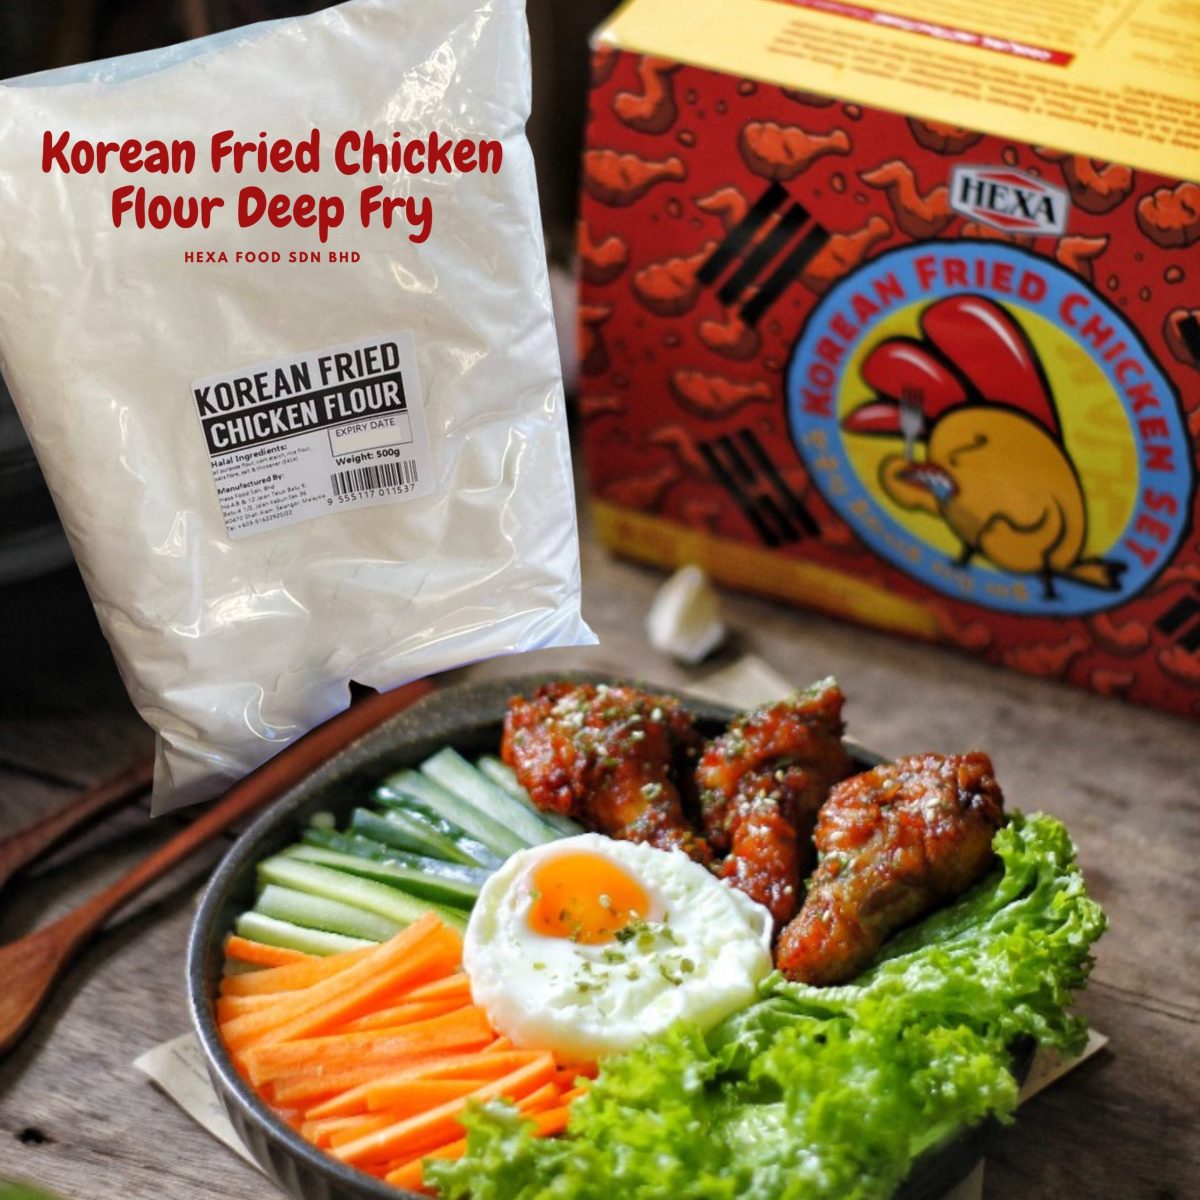 Korean Fried Chicken Flour Deep Fry